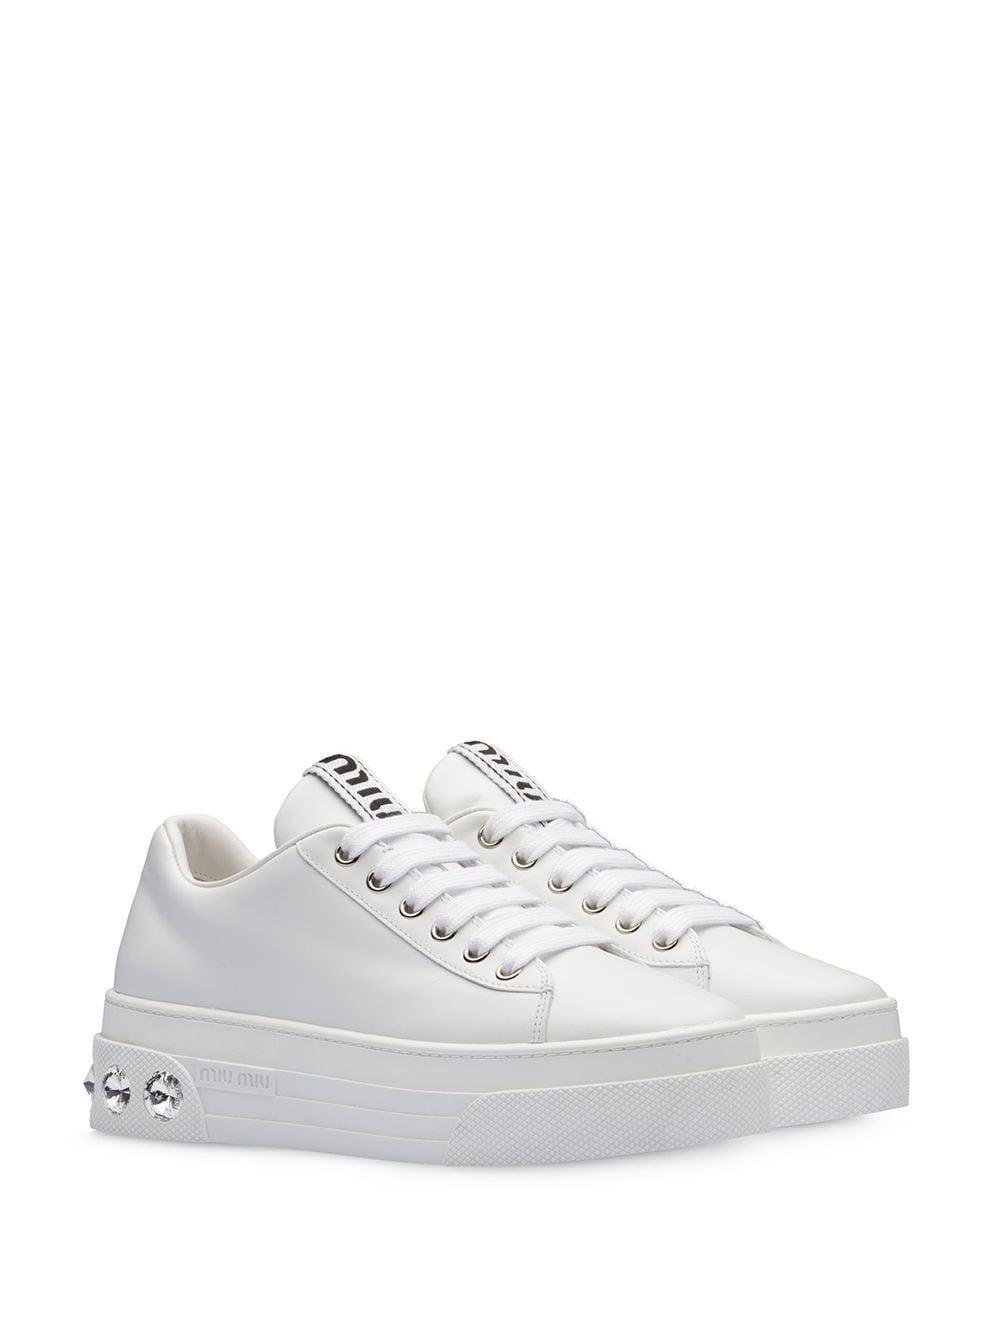 Miu Miu Leather Sneakers White | Lyst Canada